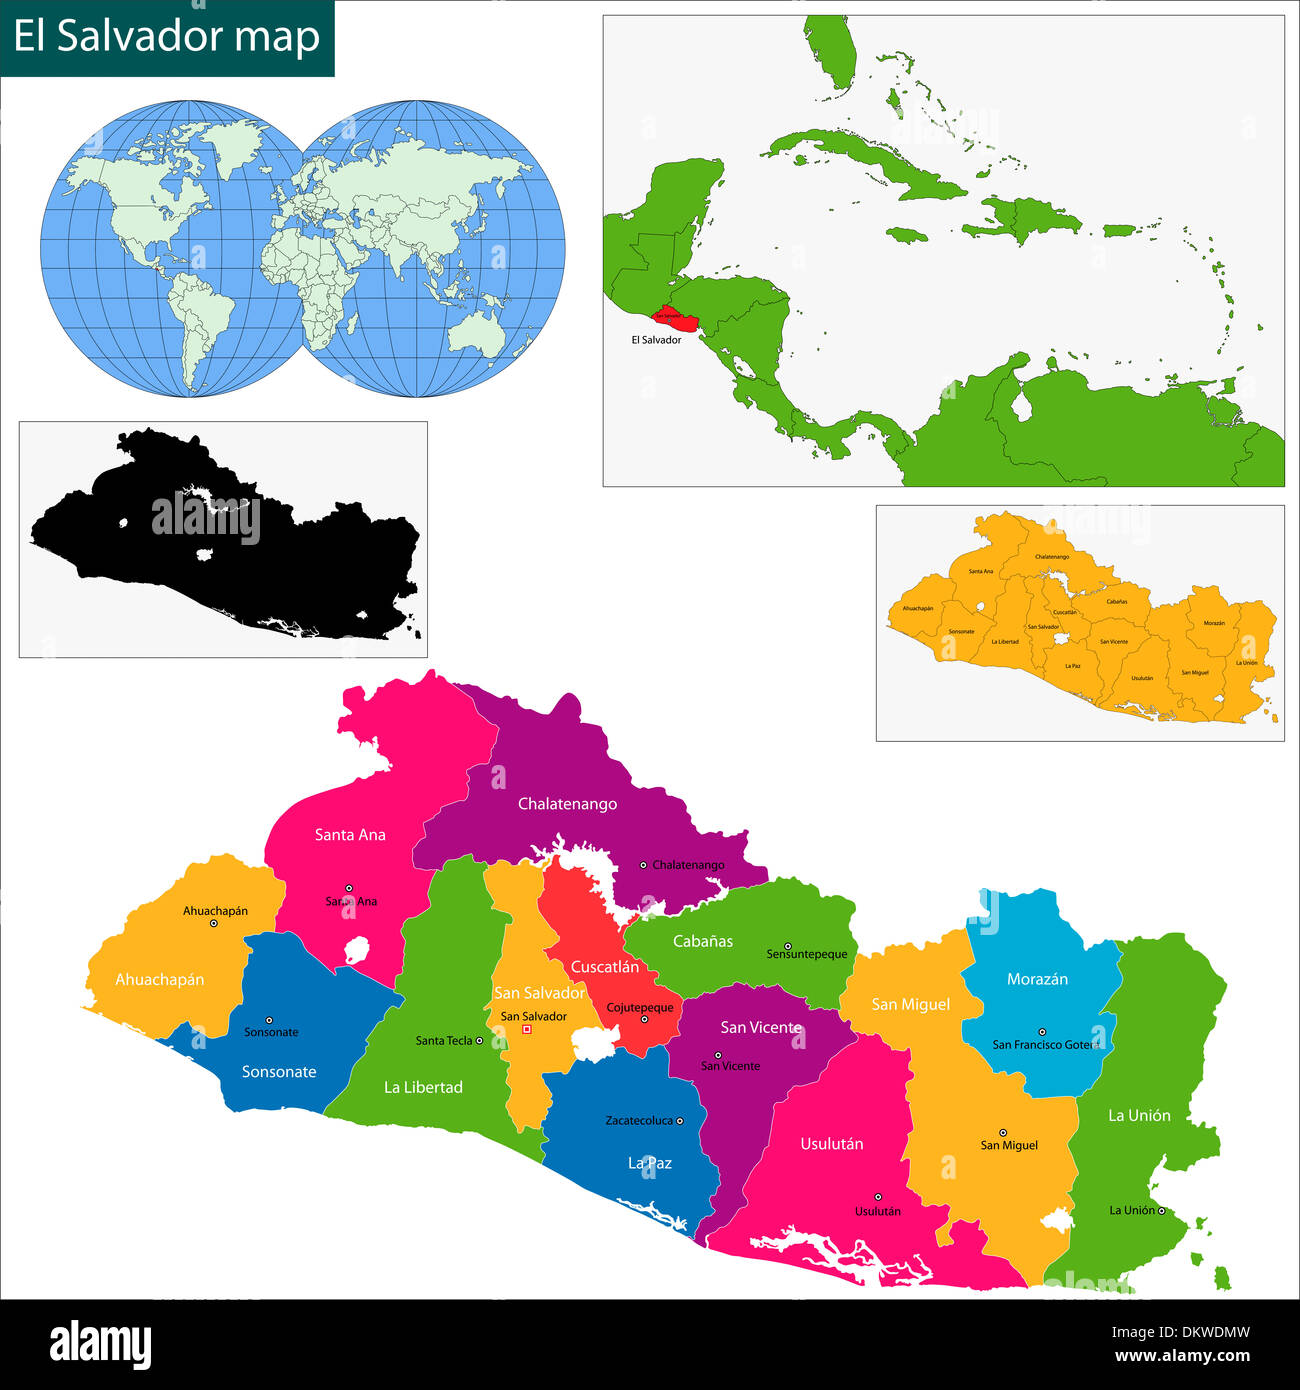 El Salvador map Stock Photo